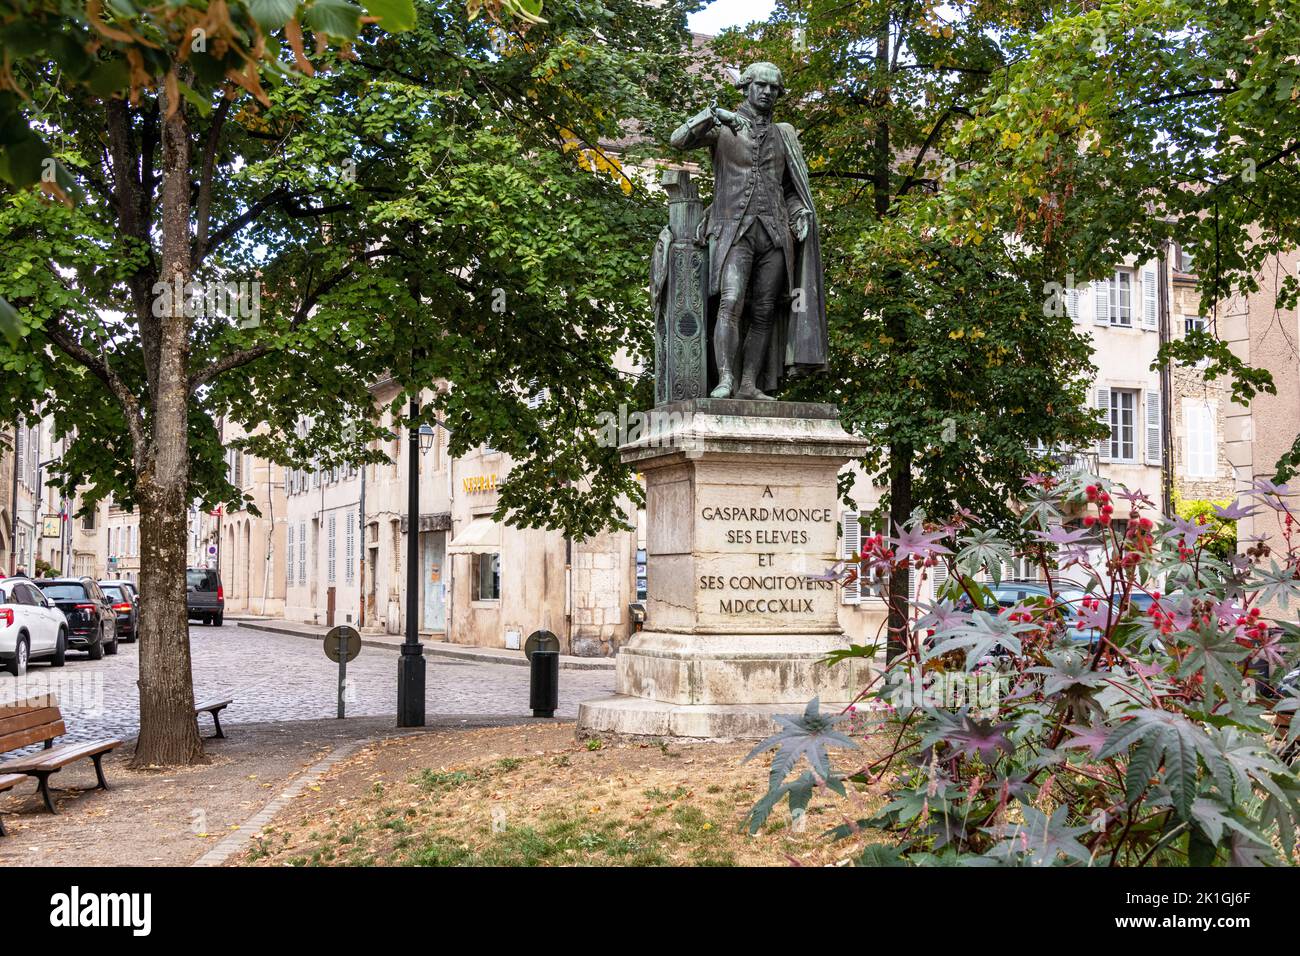 Eine Statue des Gaspard Monge Mathematikers, Beaune, Burgund Frankreich. Stockfoto